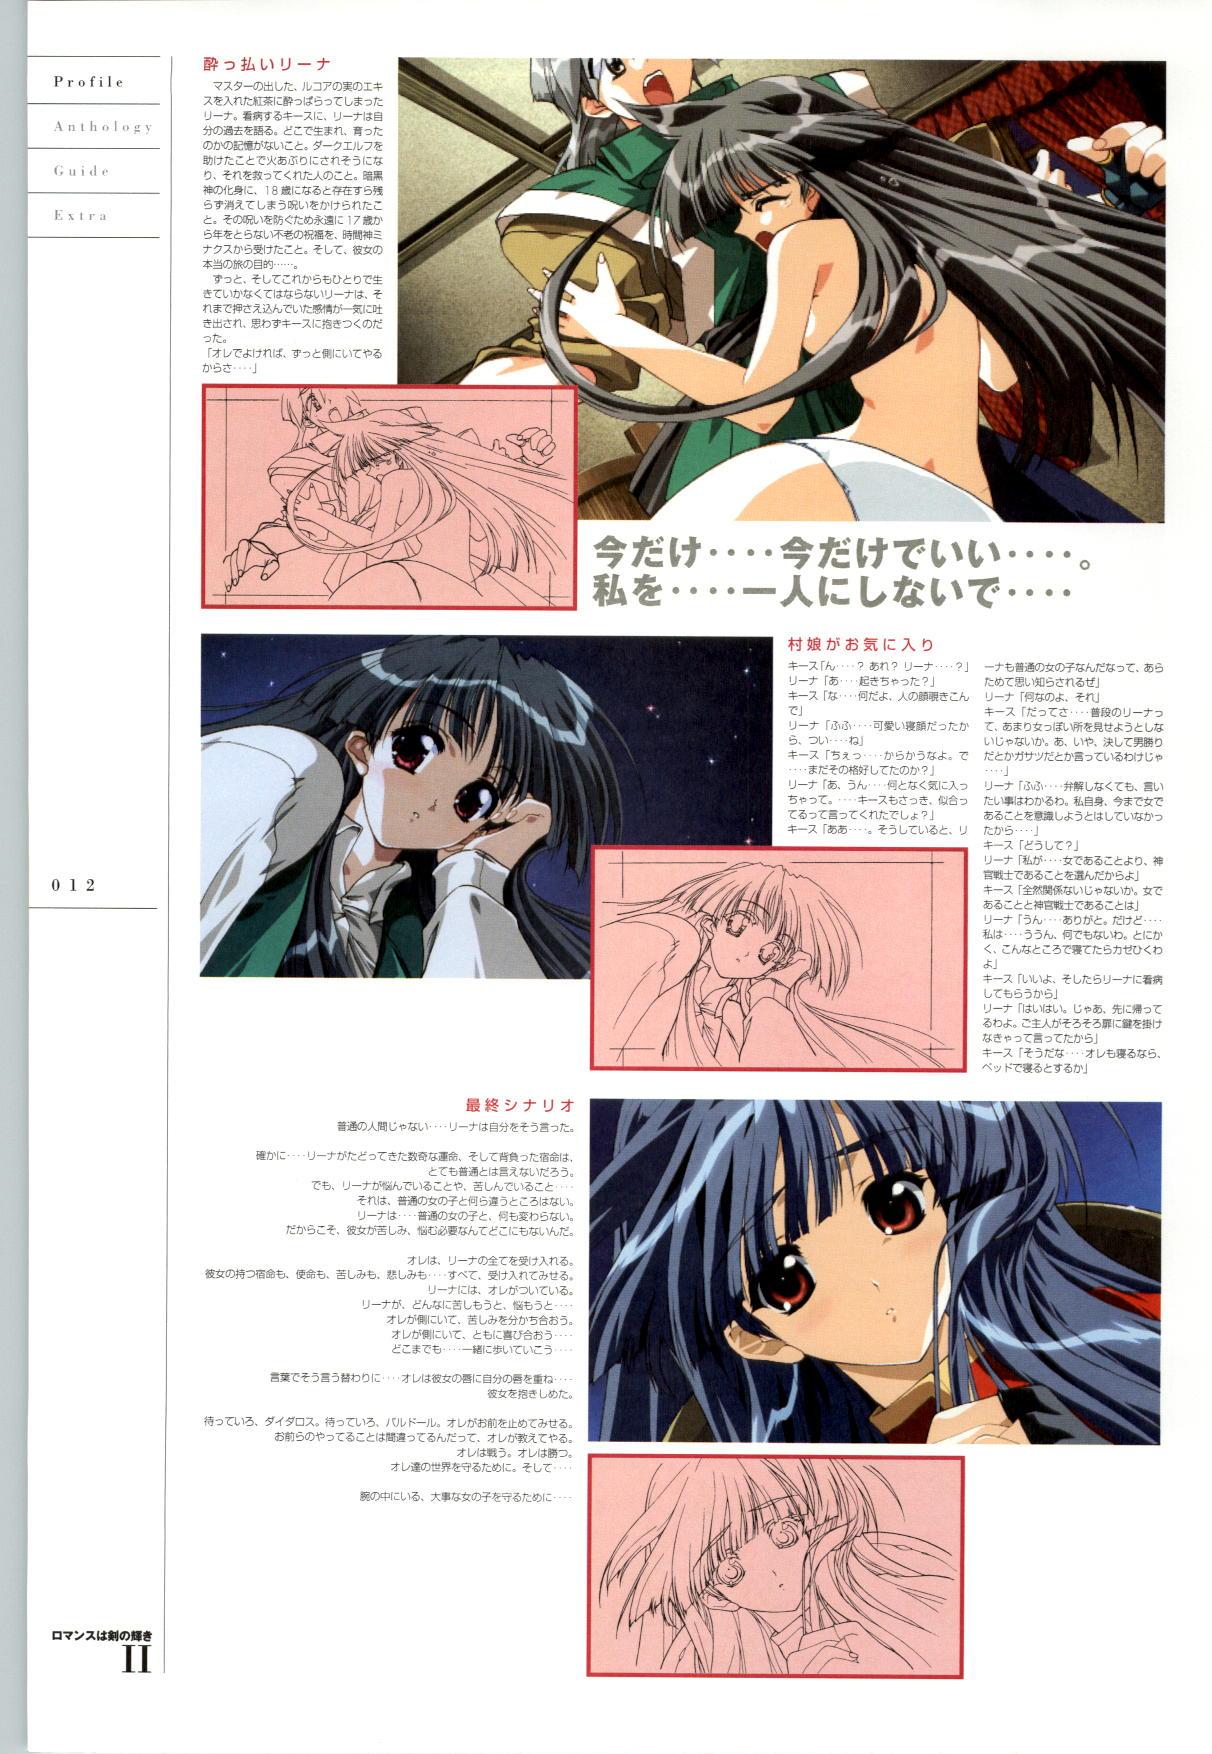 [FAIRYTALE] Romance wa Tsurugi no Kagayaki II - Koushiki Kaido - Emotional Fanbook 12